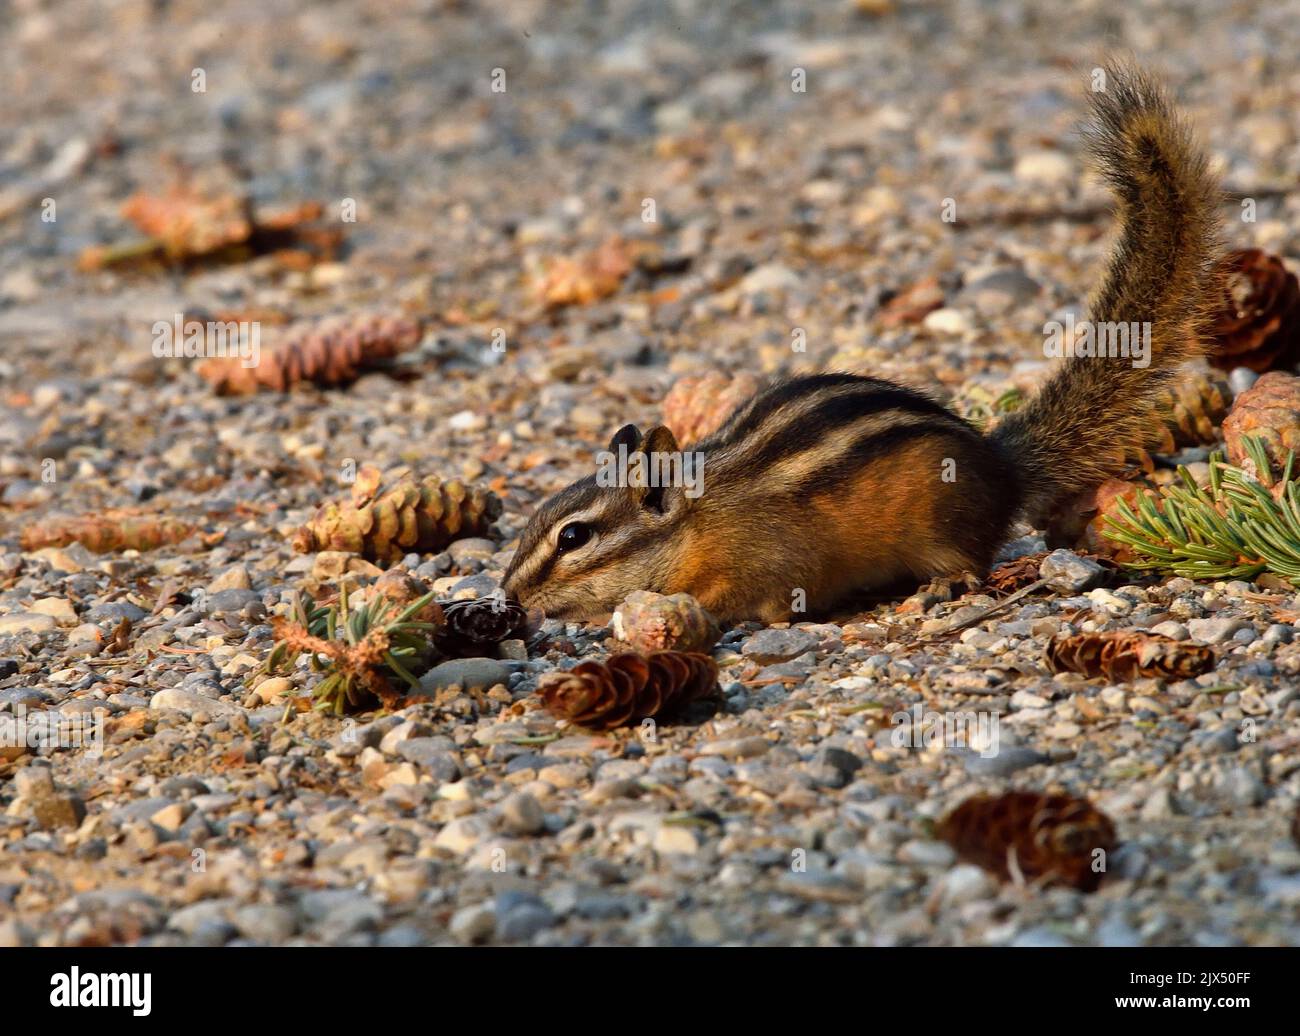 Ein wenig Chipmunk, 'Eutamias minimus', schnüffelt einige Fichtenzapfen, die ein rotes Eichhörnchen von einer Fichte fallen gelassen hat. Stockfoto